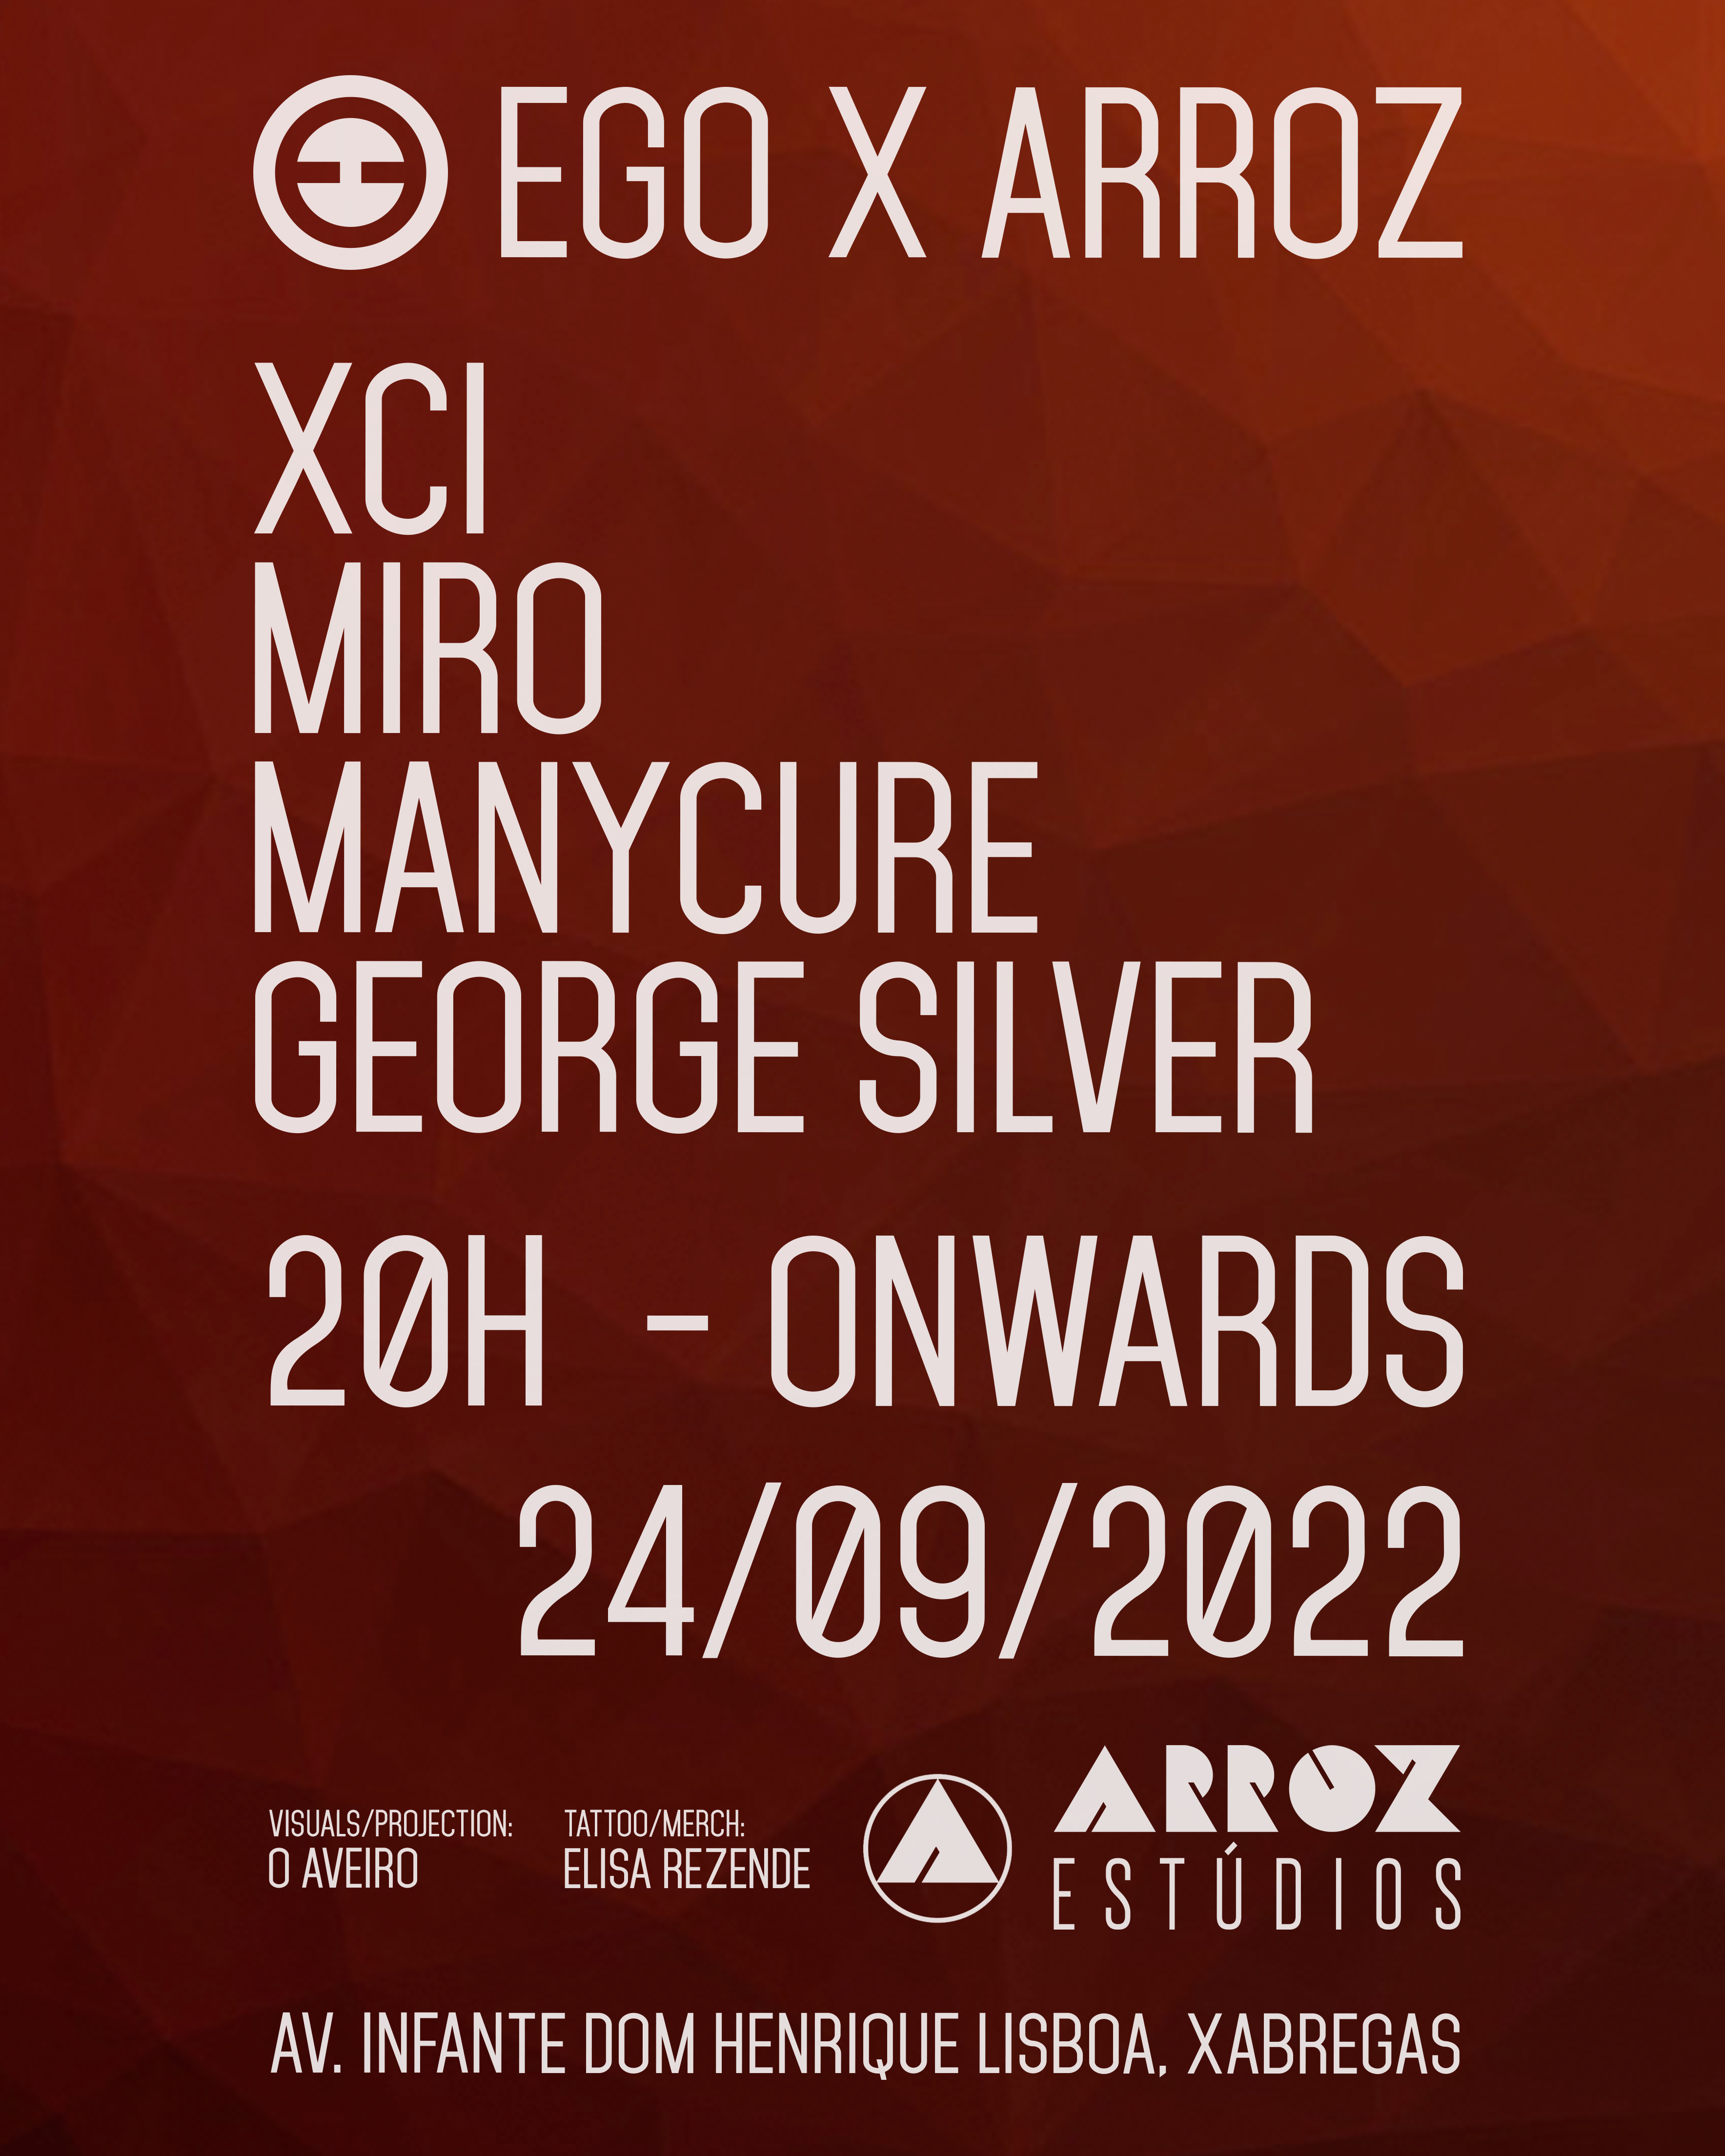 EGO x ARROZ with Miro, George Silver, Manycure & XCI - Página frontal